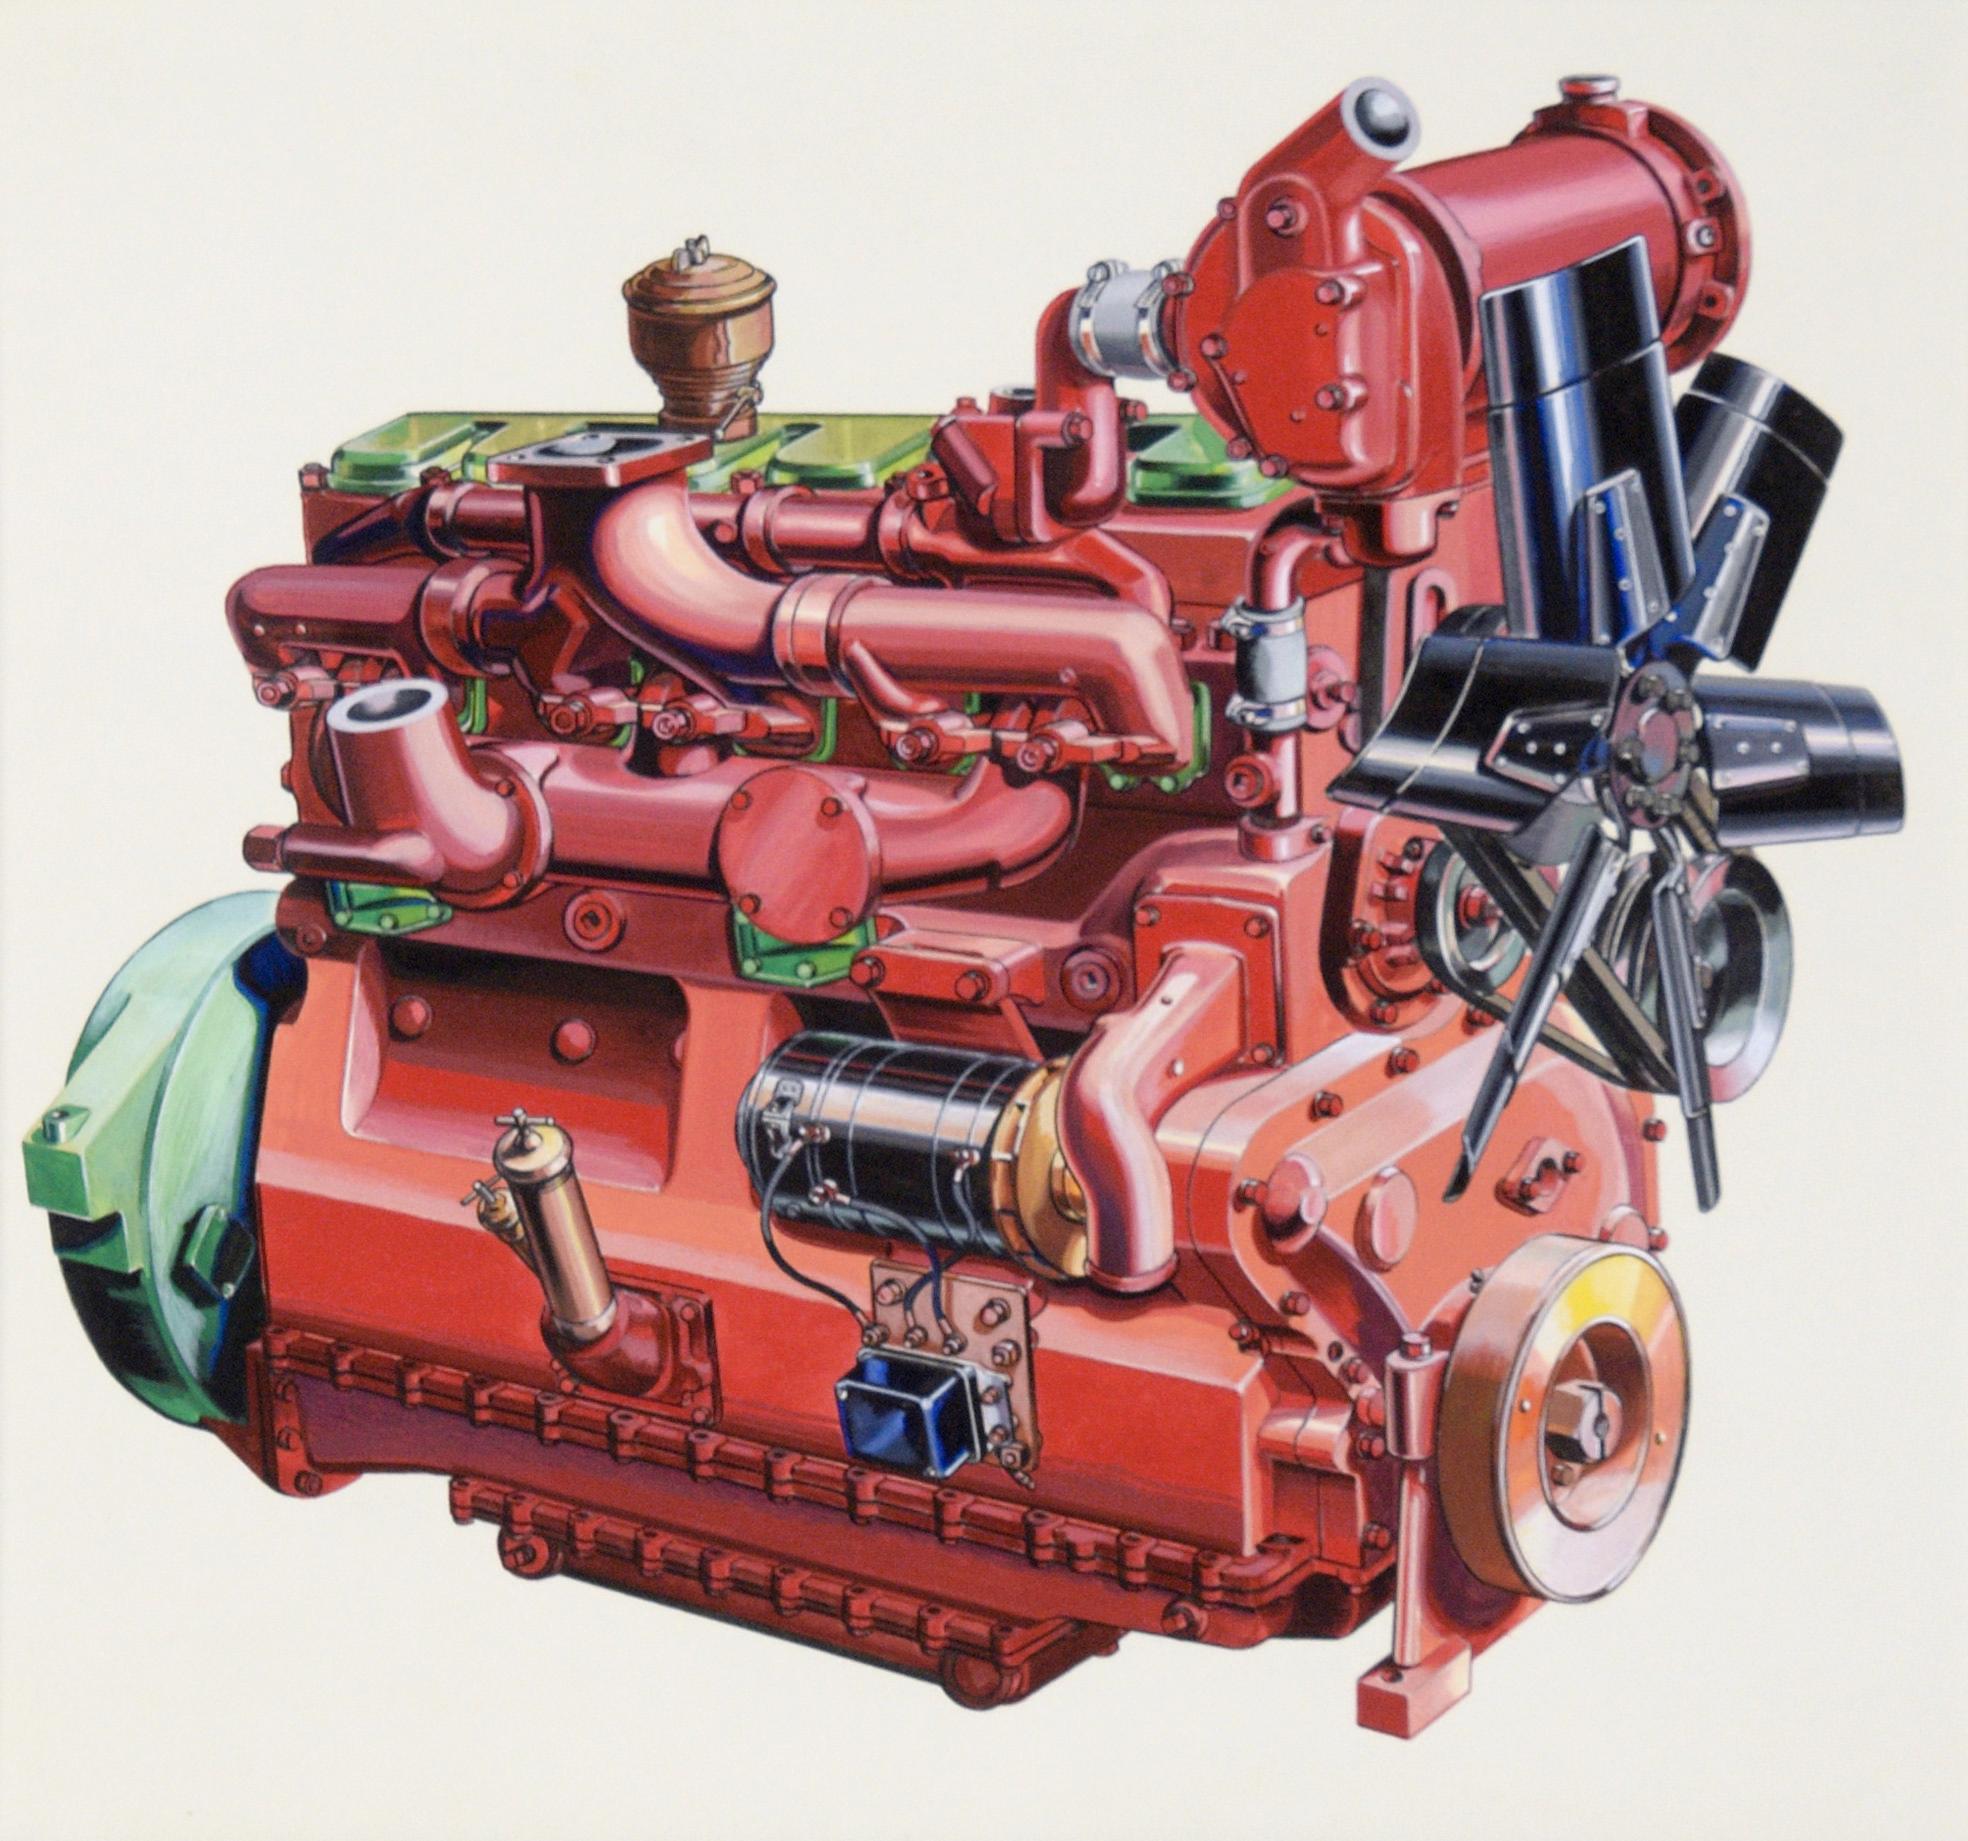 Illustration technique d'un moteur Ford Lehman à la gouache sur carton lourd - Réalisme Art par Joseph Yeager